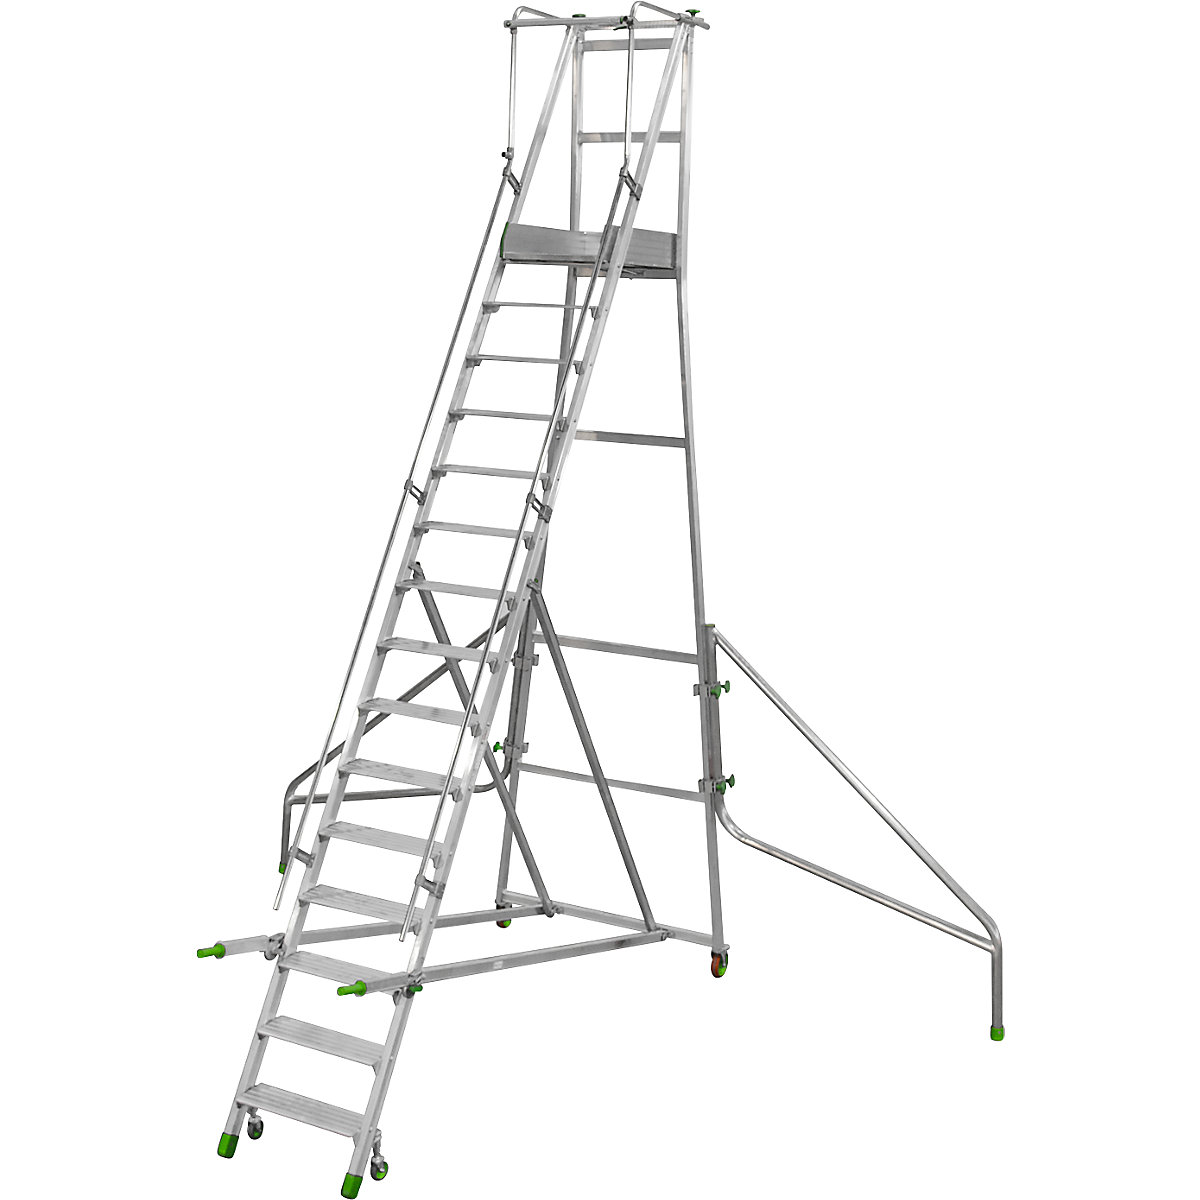 Mobile Alu-Podesttreppe, klappbar, mit gerieften Aluminiumstufen, 15 Stufen inkl. Plattform